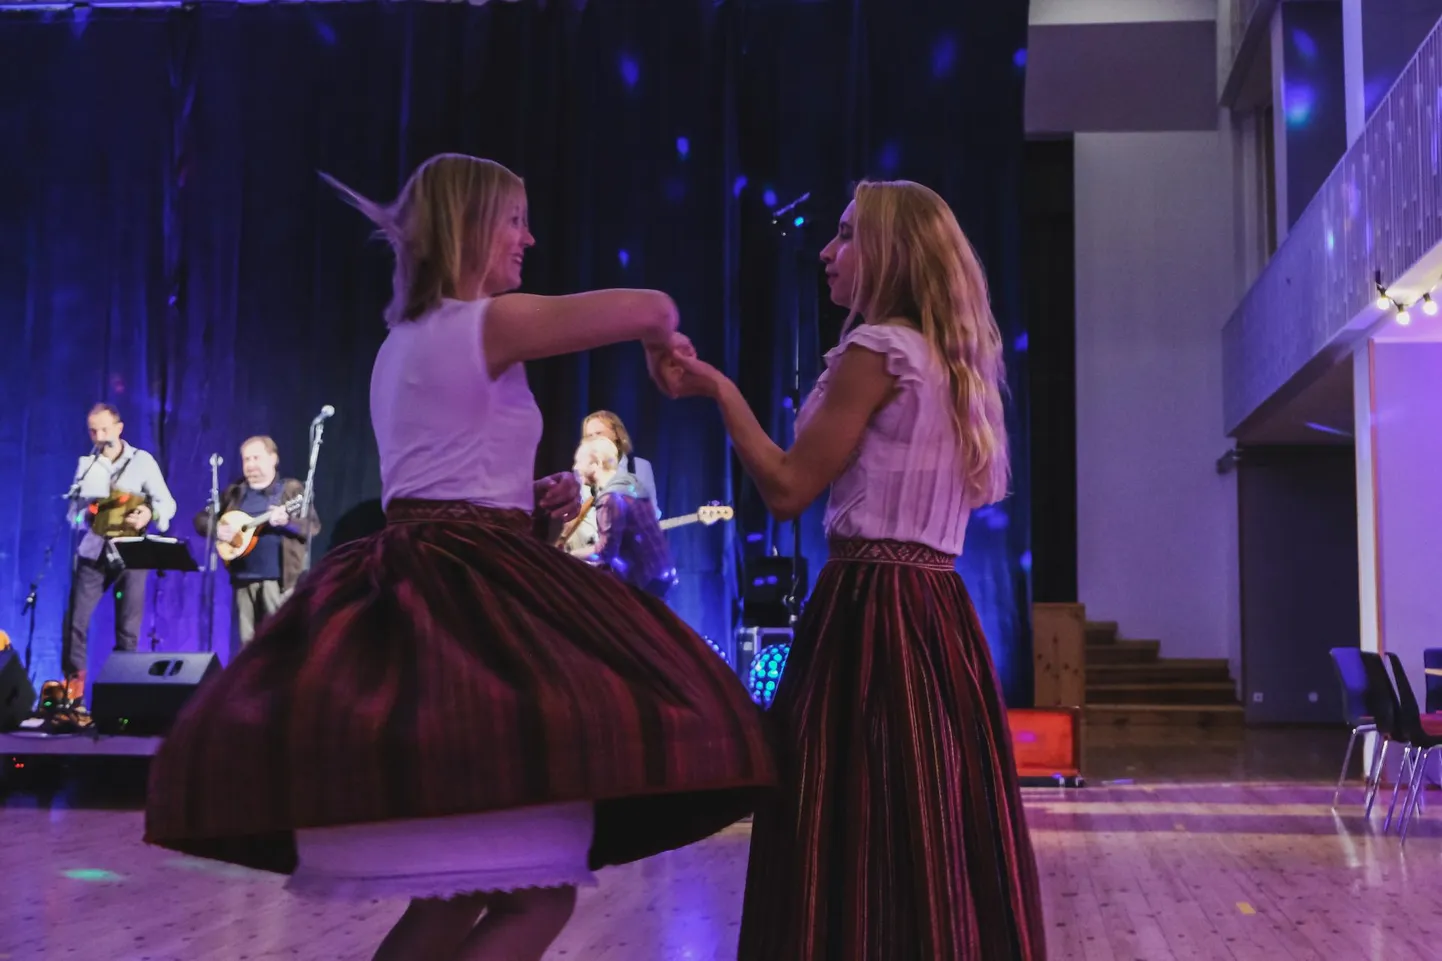 Kuigi see kohe välja ei paista, siis süvatasandil on eesti keel pitsiline. Pildil tantsivad Kihnu tüdrukud nii hoogsalt, et pitsid paistavad.